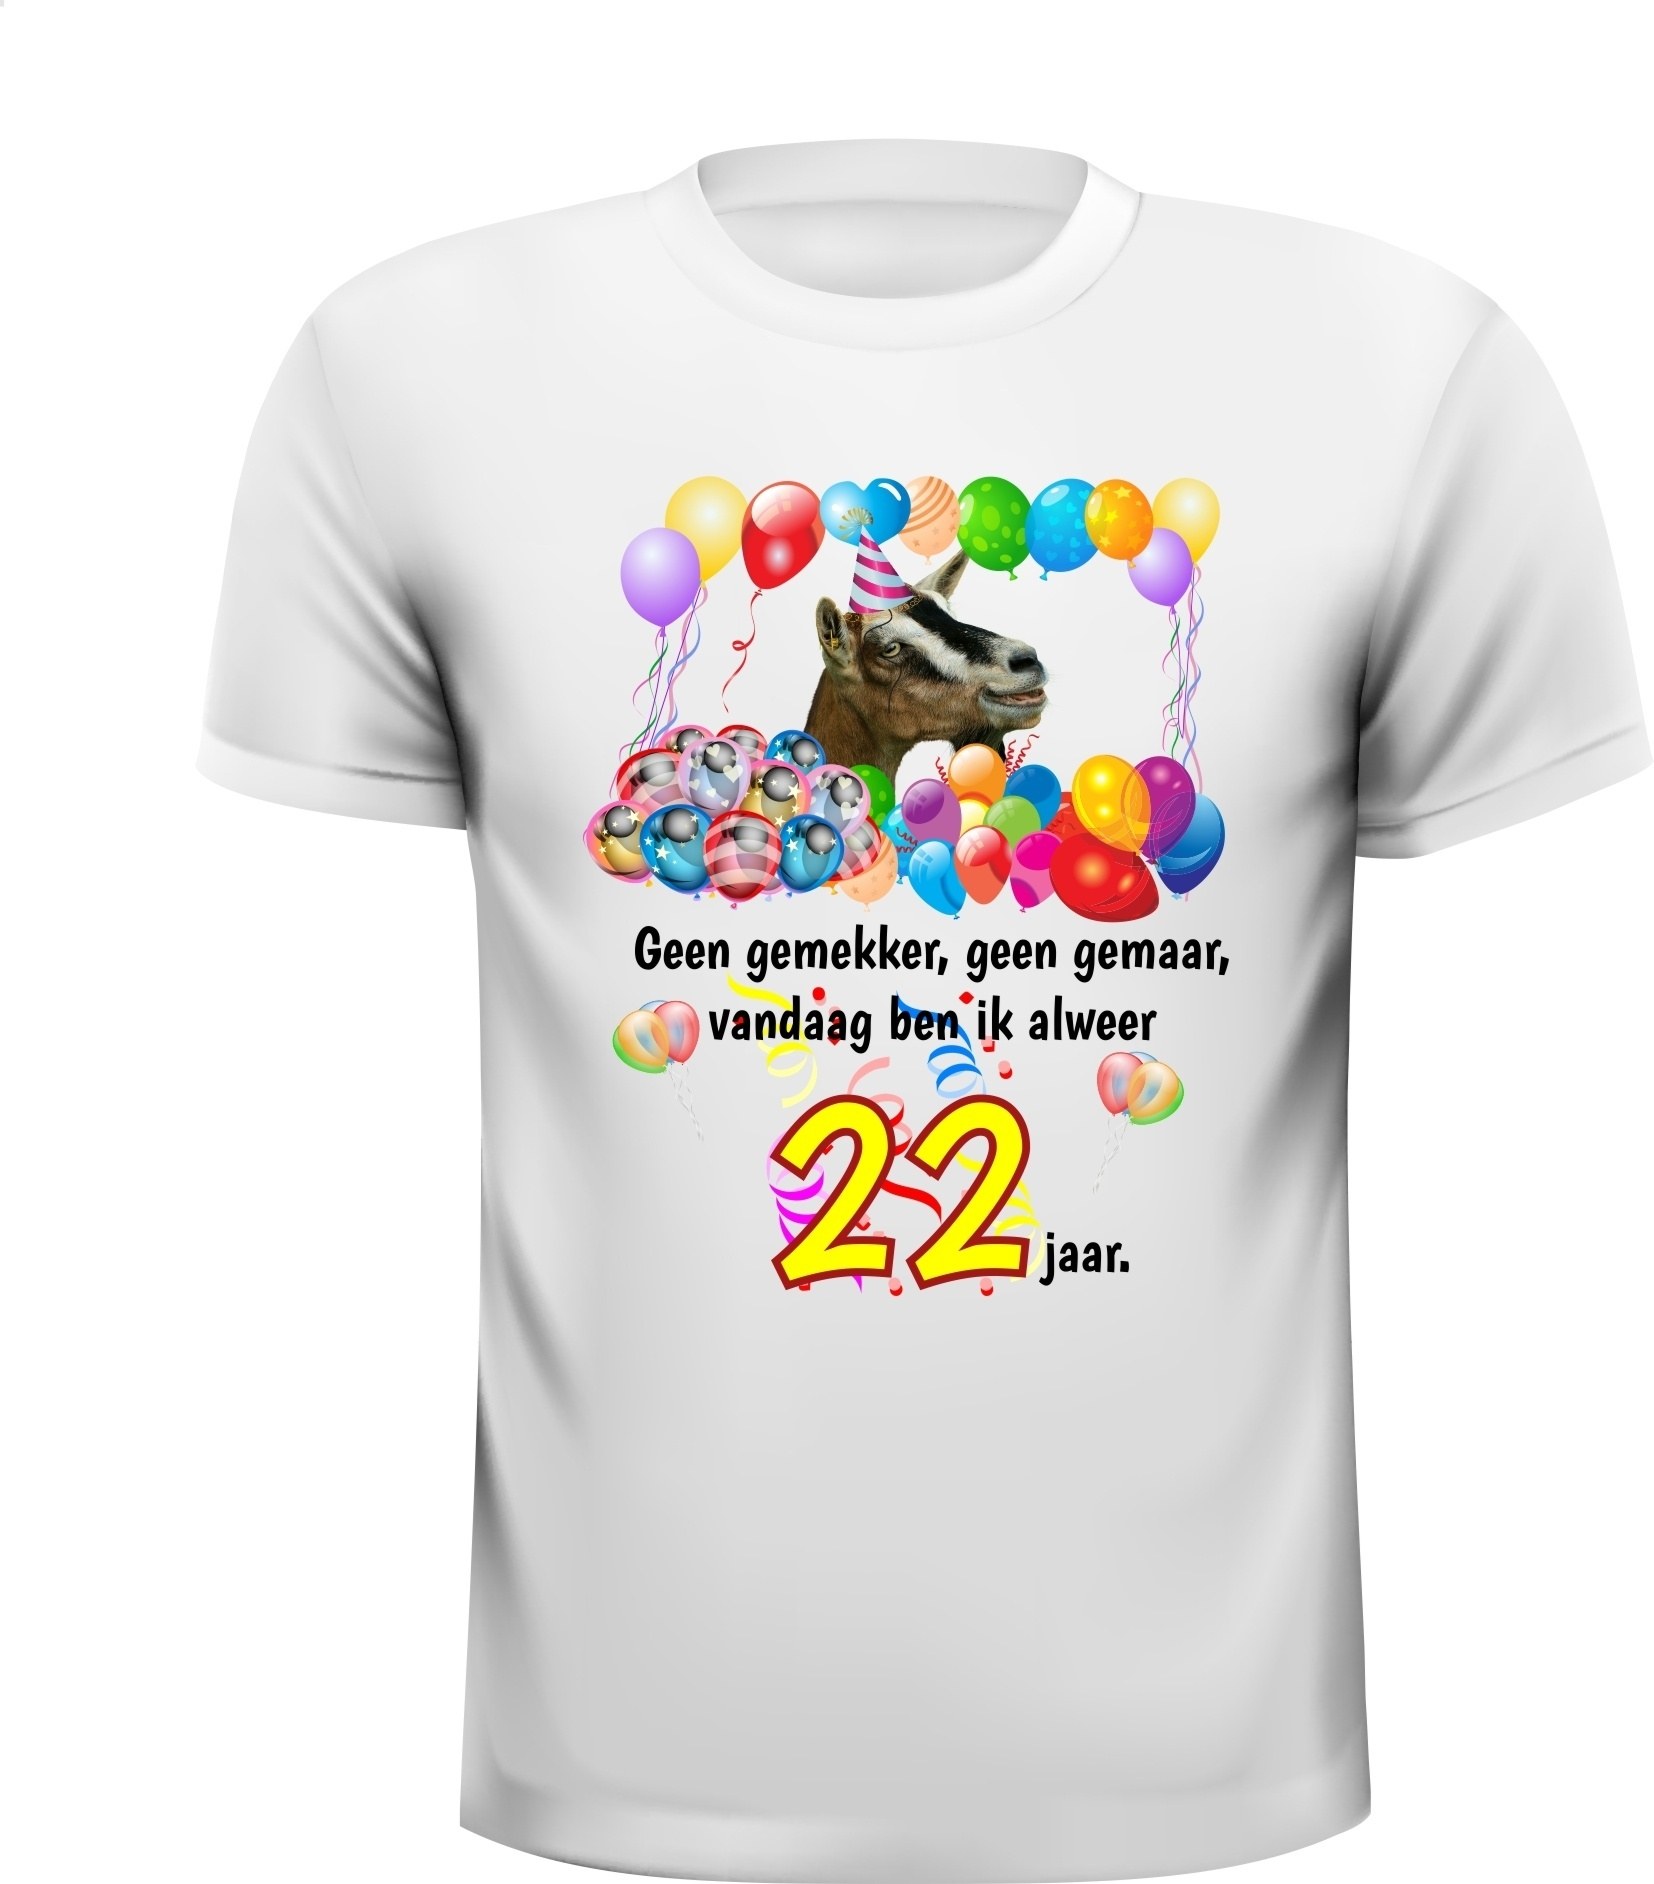 Verjaardag shirt 22 jaar leeftijd met grappige tekst